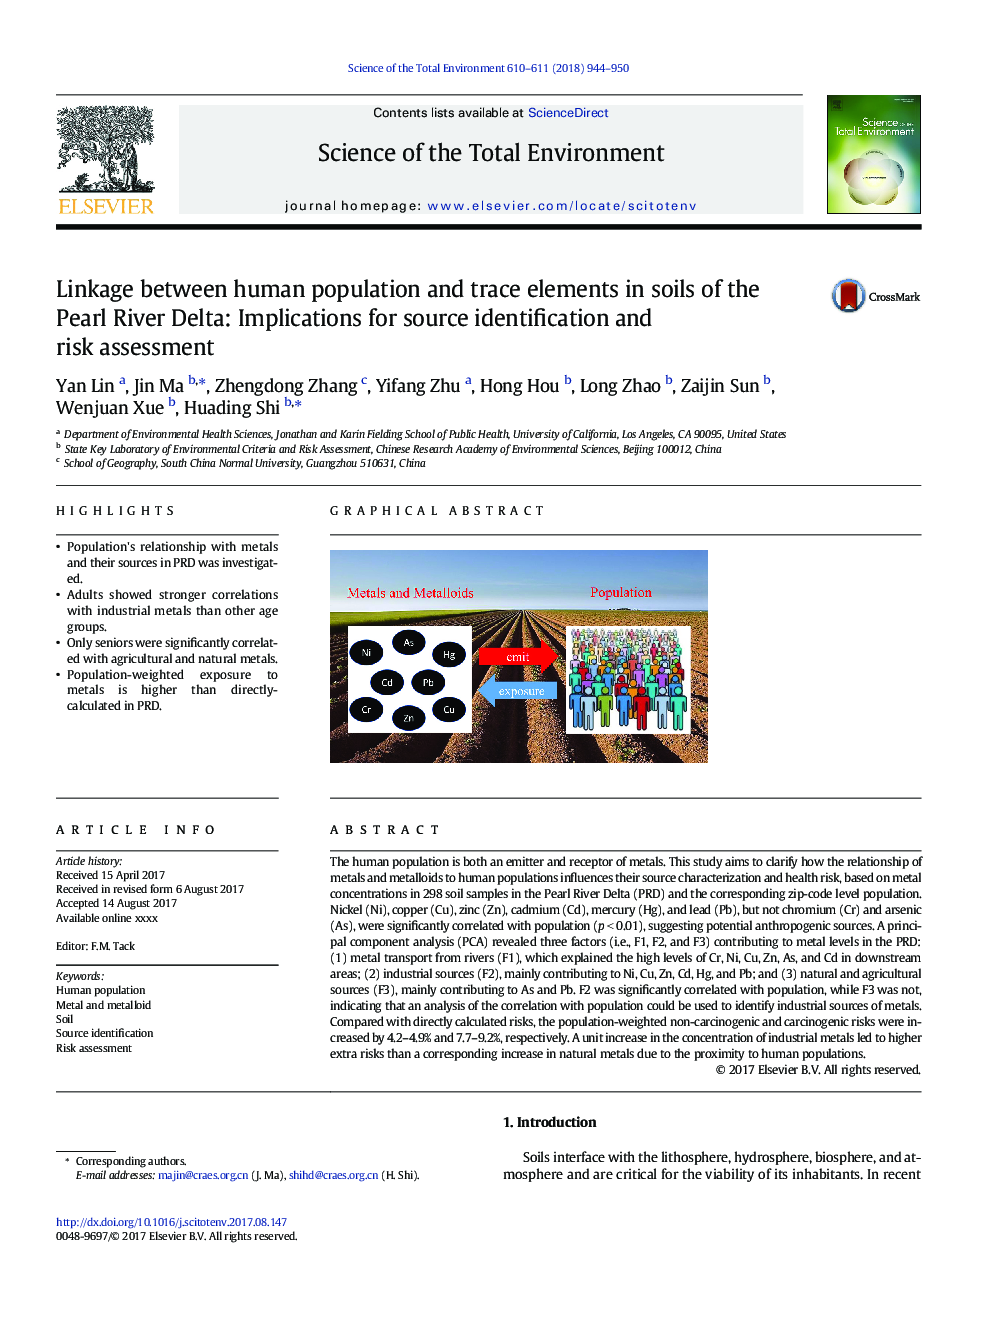 ارتباط بین جمعیت انسانی و عناصر کمیاب در خاک های دلتای رودخانه مروارید: پیامدهای شناسایی منبع و ارزیابی خطر